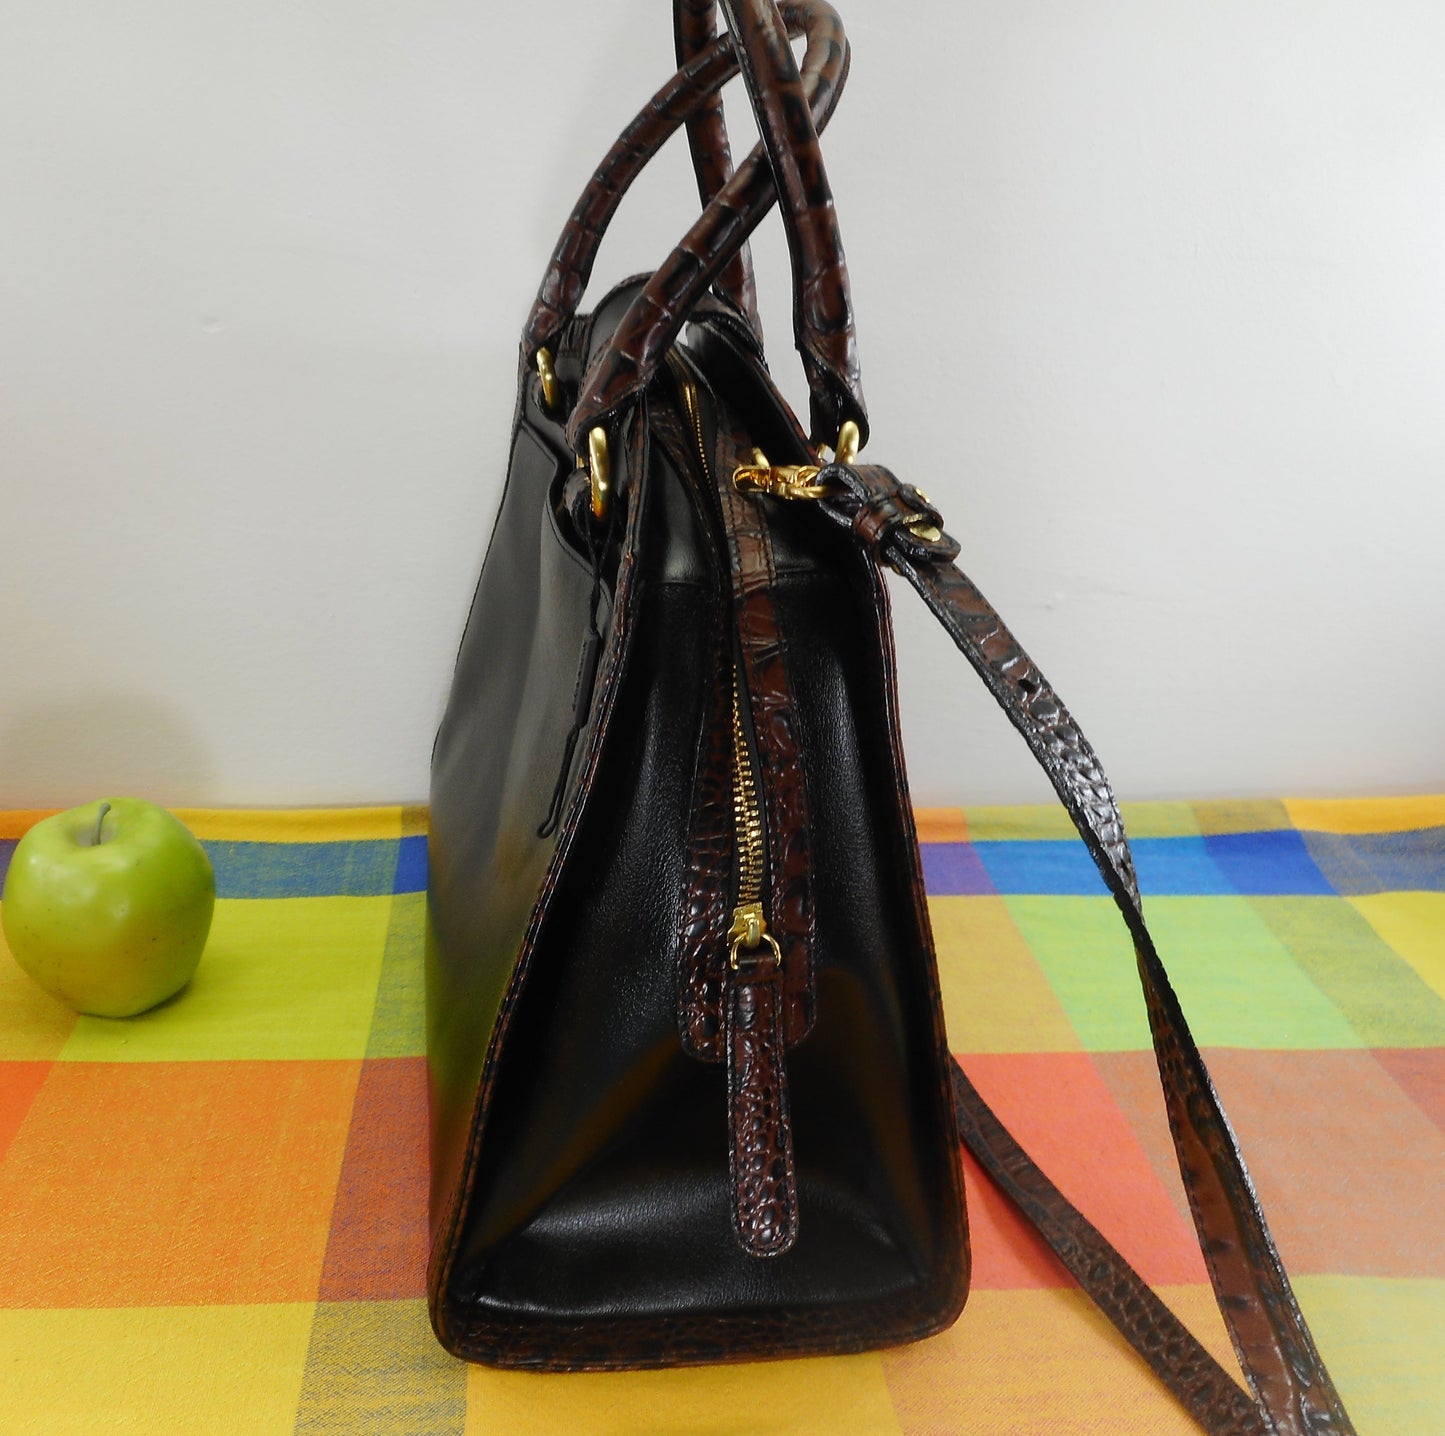 Brahmin Alligator Black Leather Satchel Handbag Shoulder Bag - Used Once EUC Estate Item